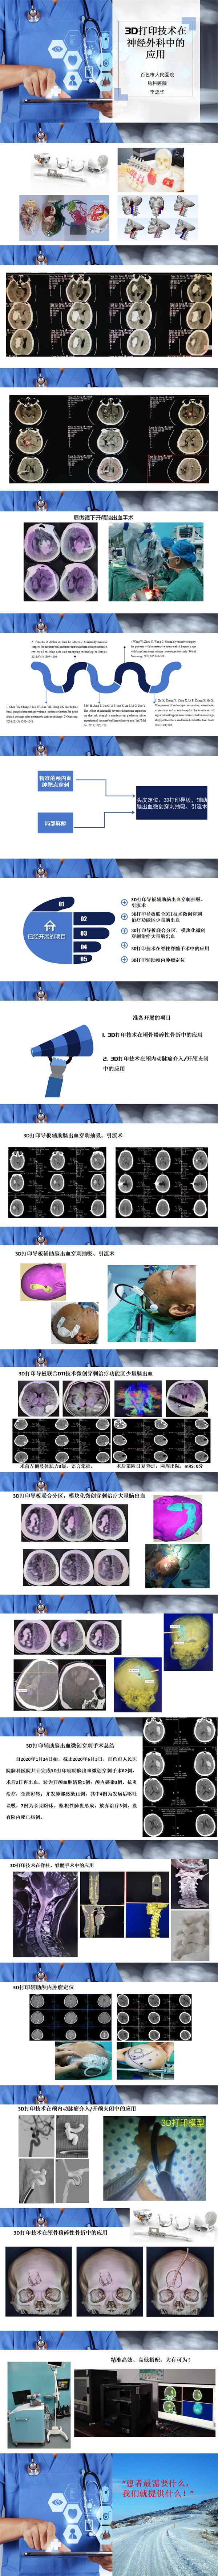 3D打印技术在神经外科中的应用-李忠华_01.png